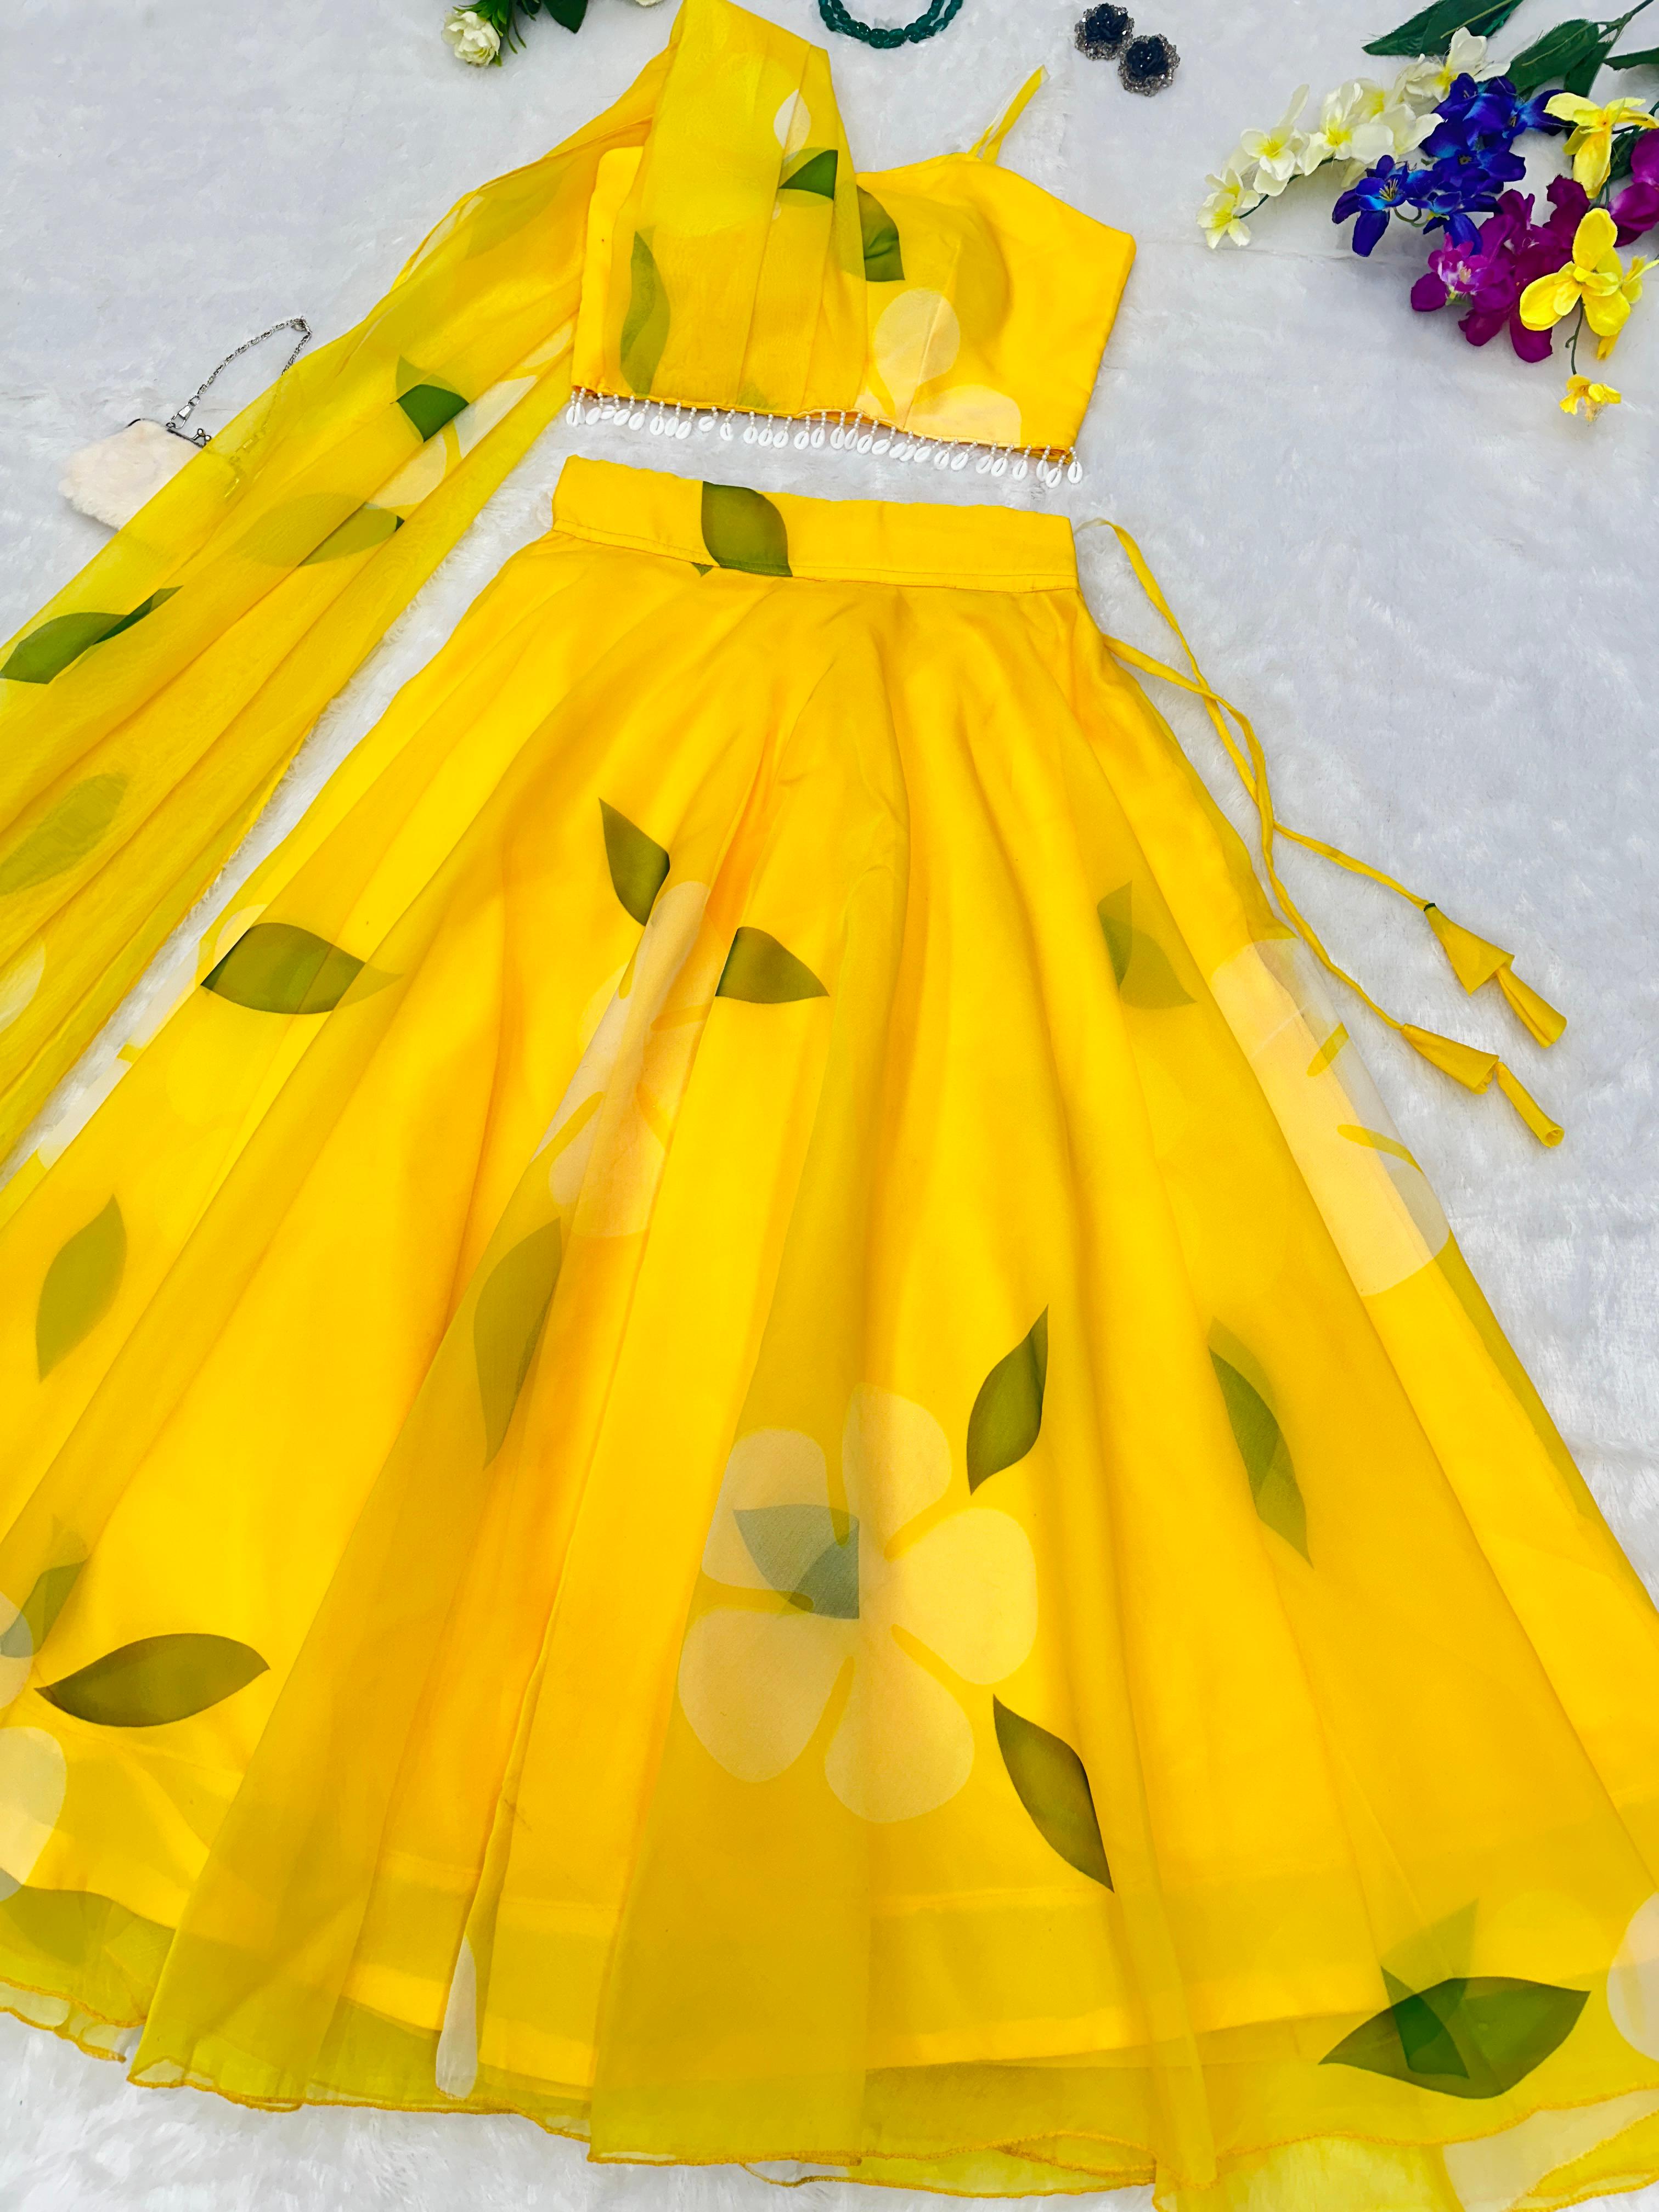 Haldi Wear Digital Printed Yellow Color Lehenga Choli